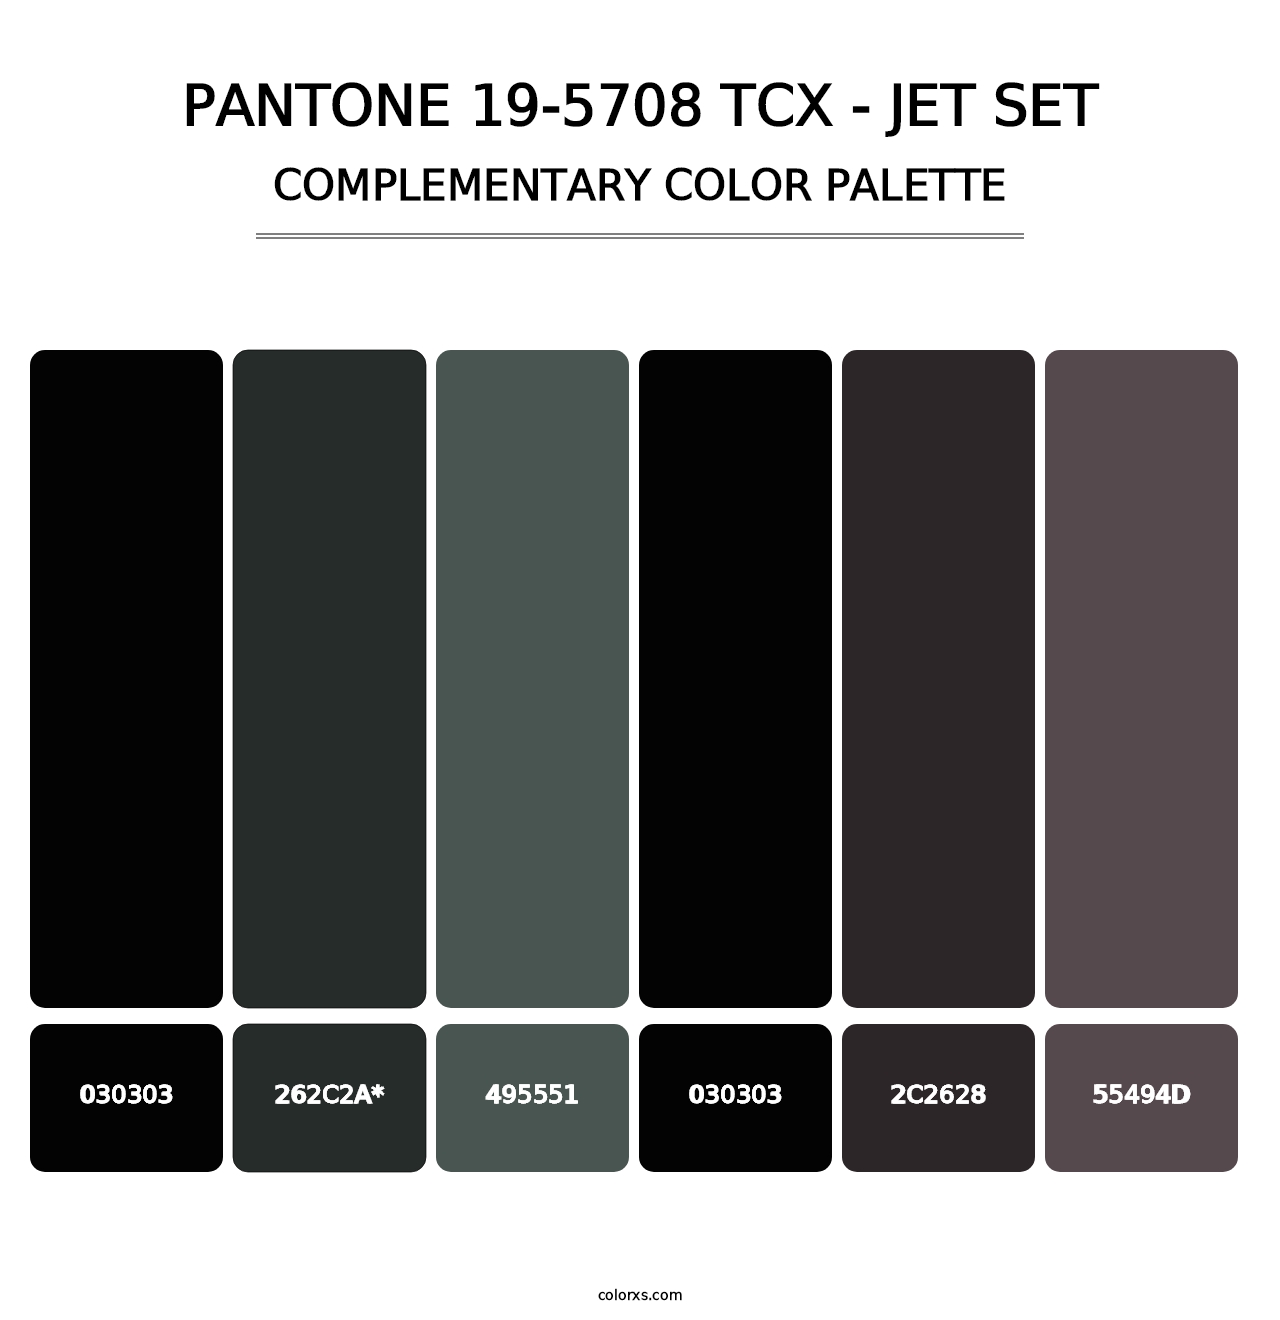 PANTONE 19-5708 TCX - Jet Set - Complementary Color Palette